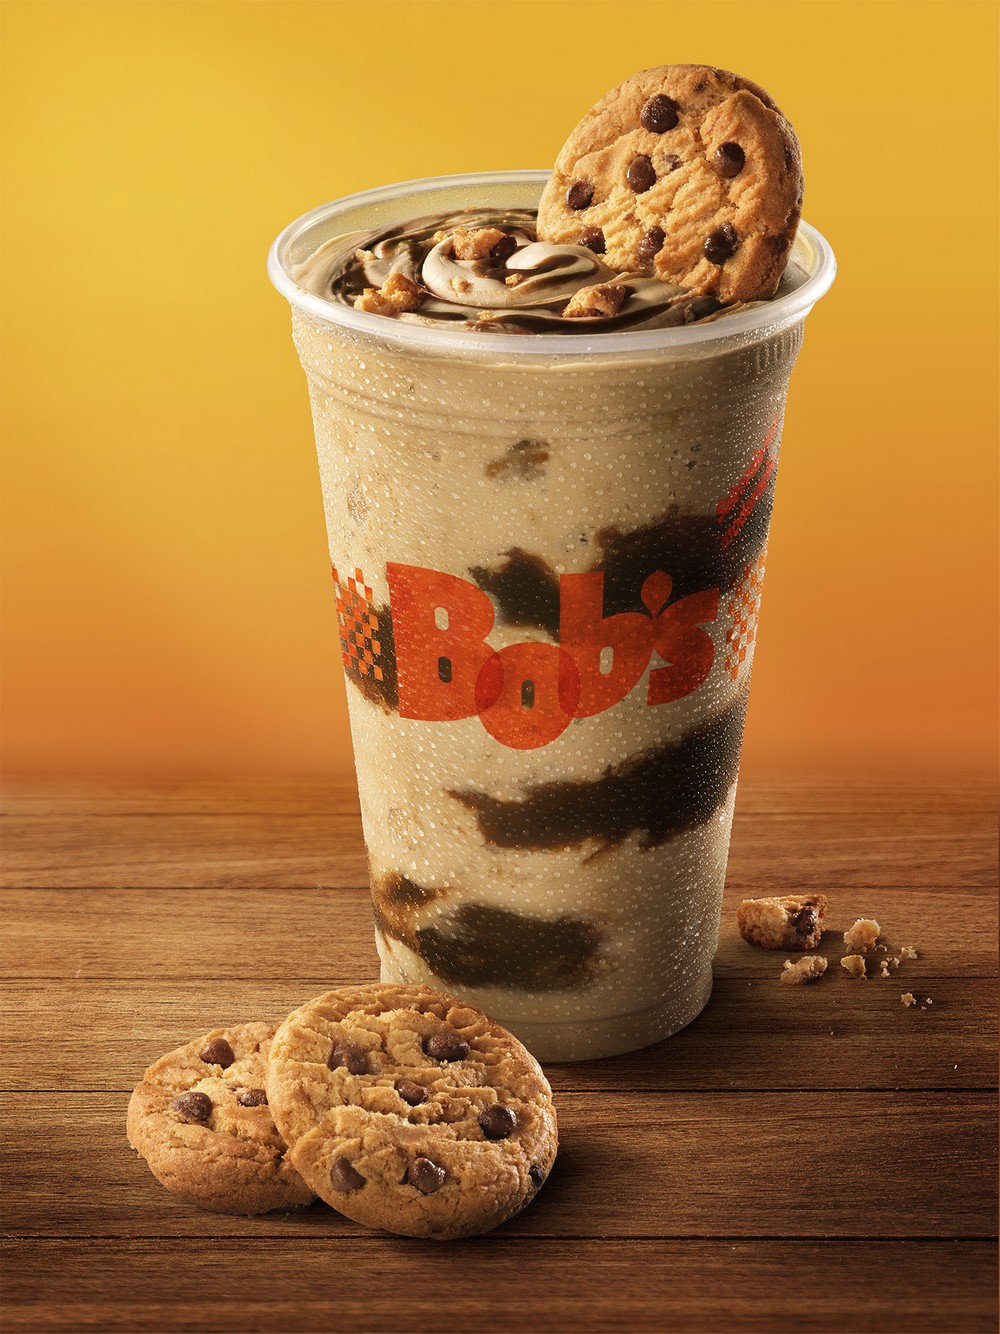 Bob’s firma parceria com Bauducco e lança milk-shake de creme de avelã com chocolate e pedaços de cookies